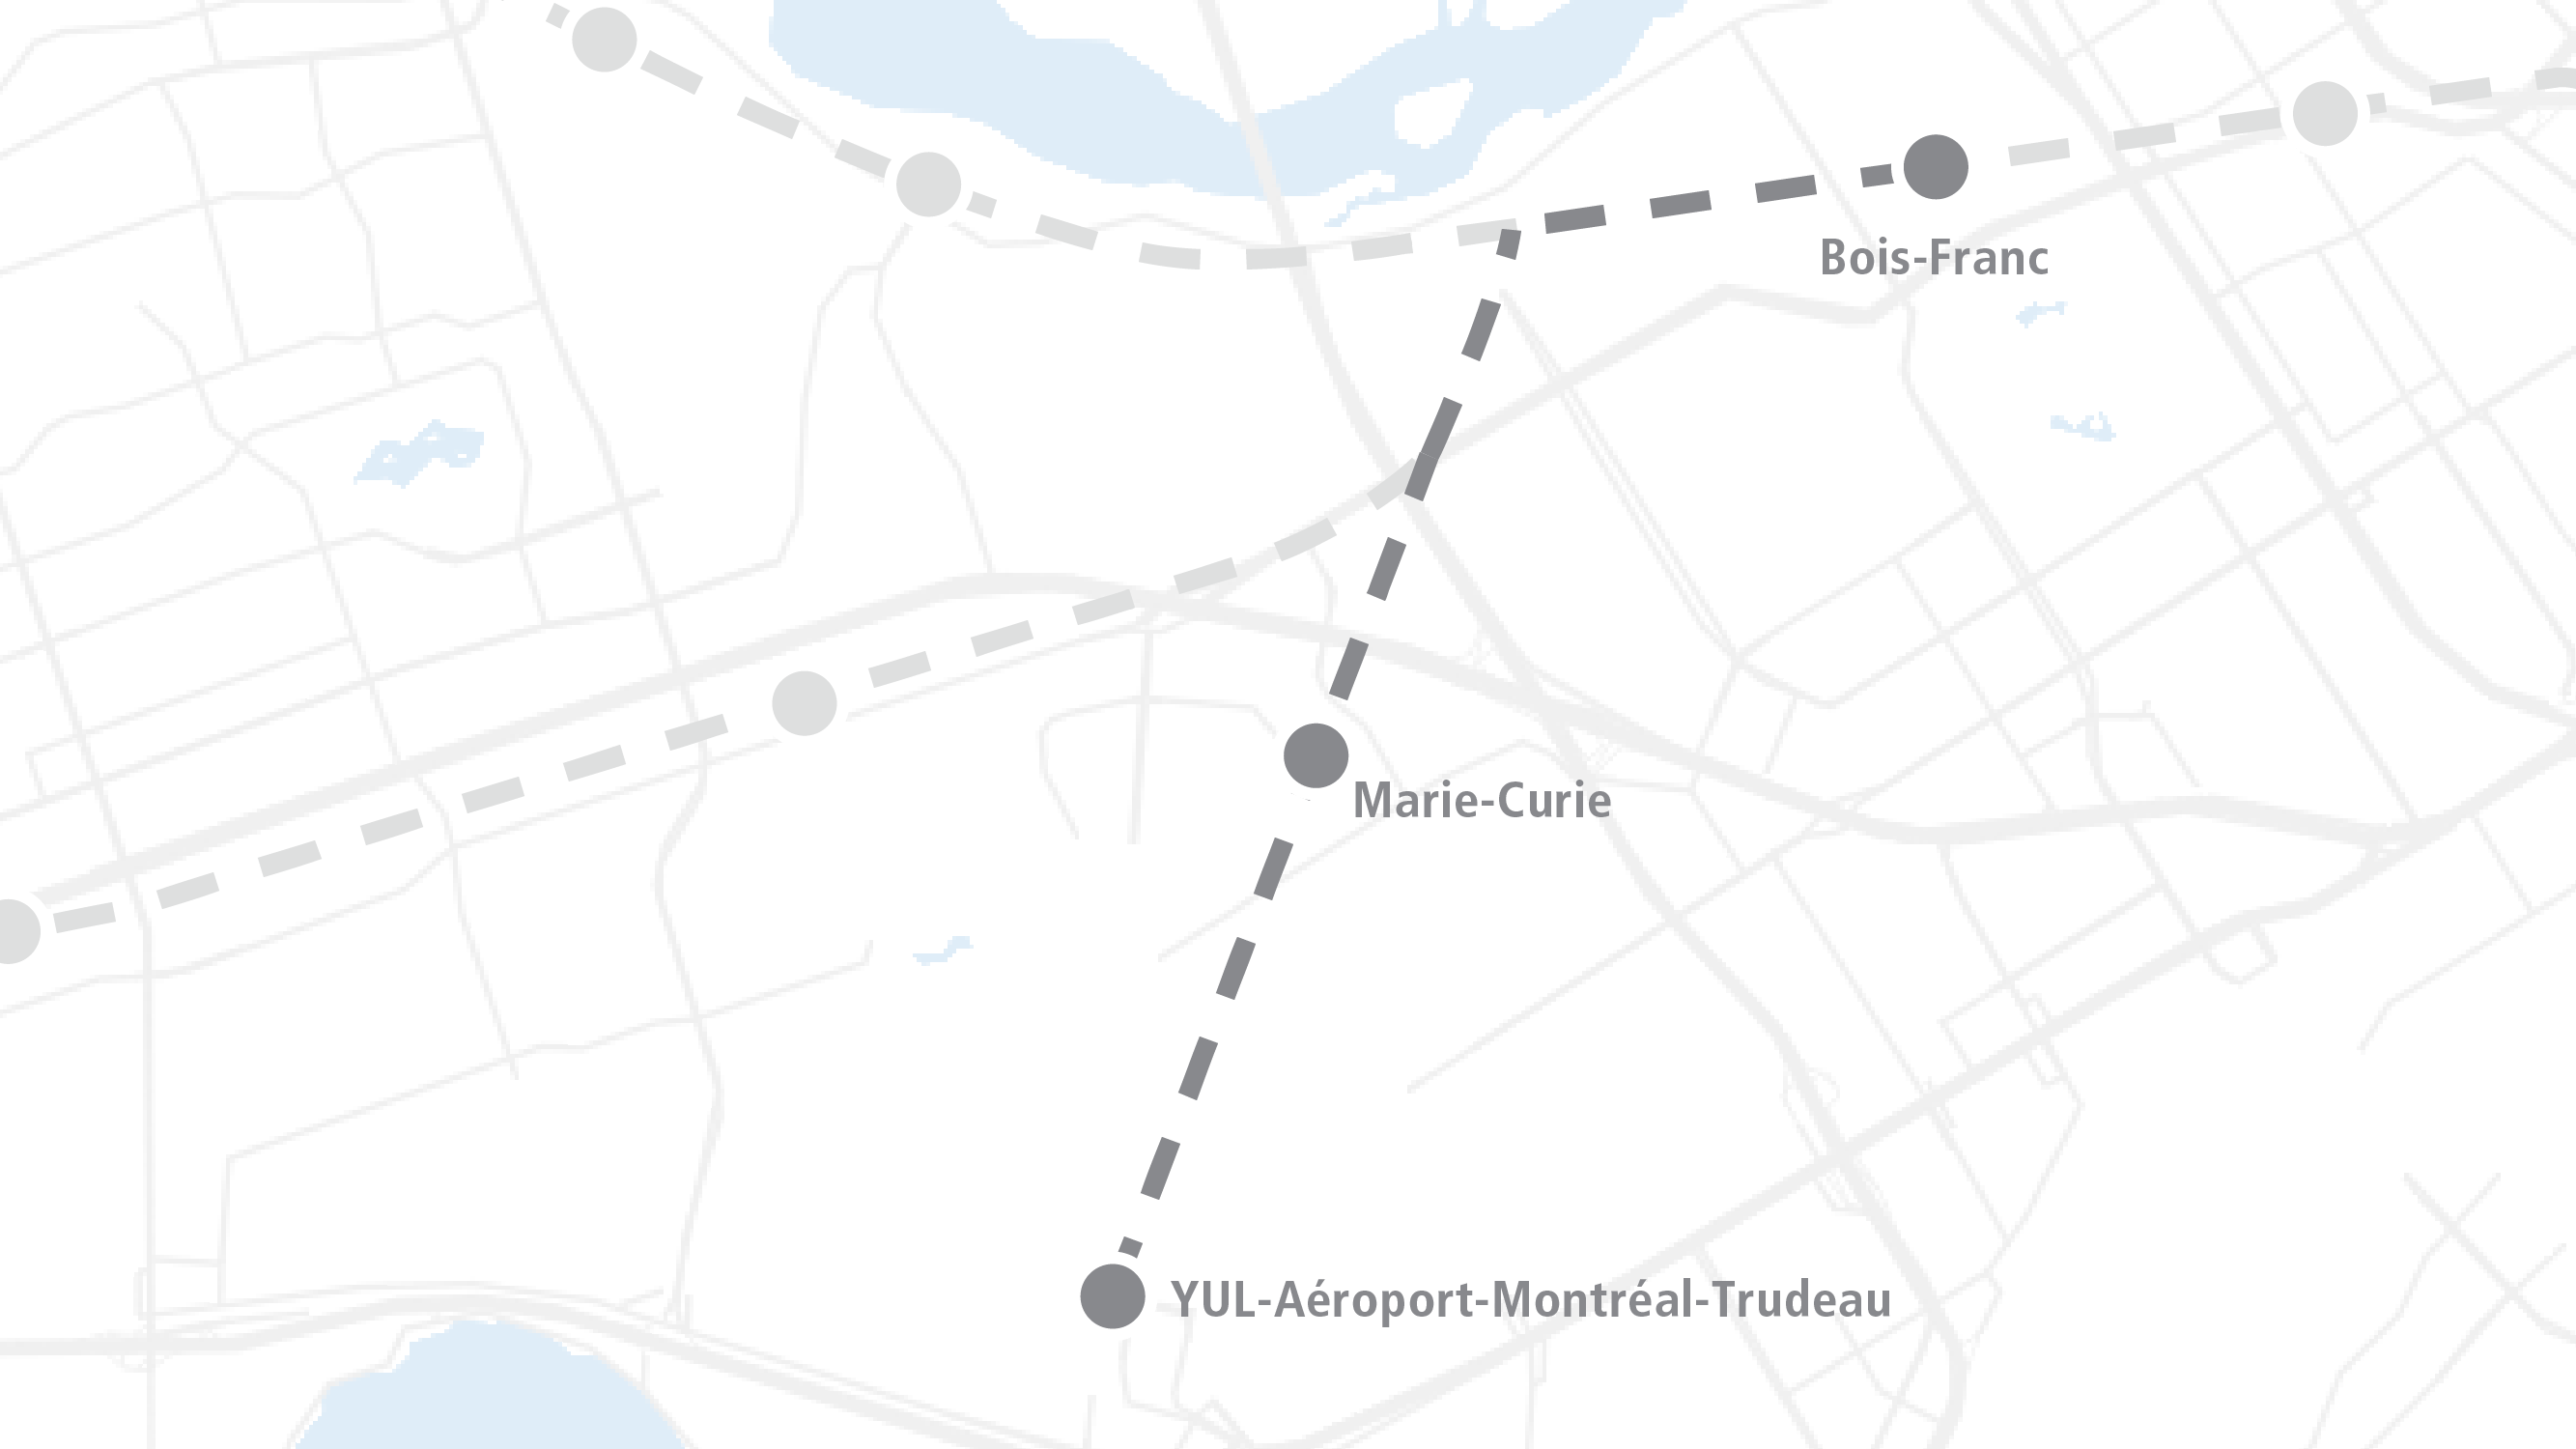 YUL-Aéroport-Montréal-Trudeau branch